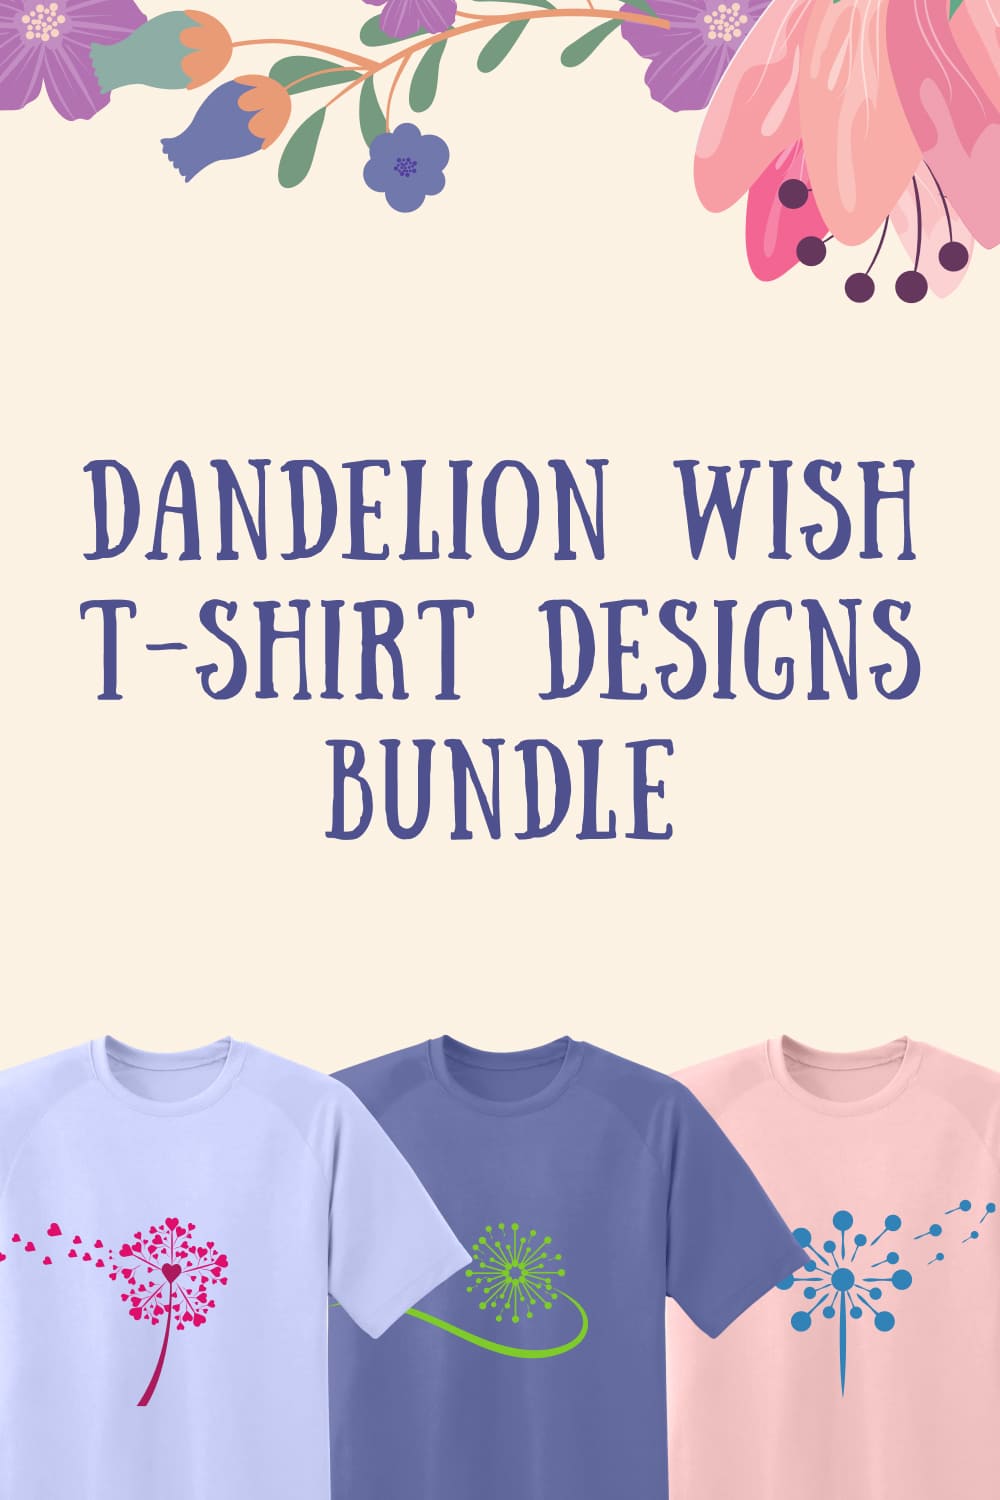 Dandelion Wish T-shirt Designs Bundle - Pinterest.